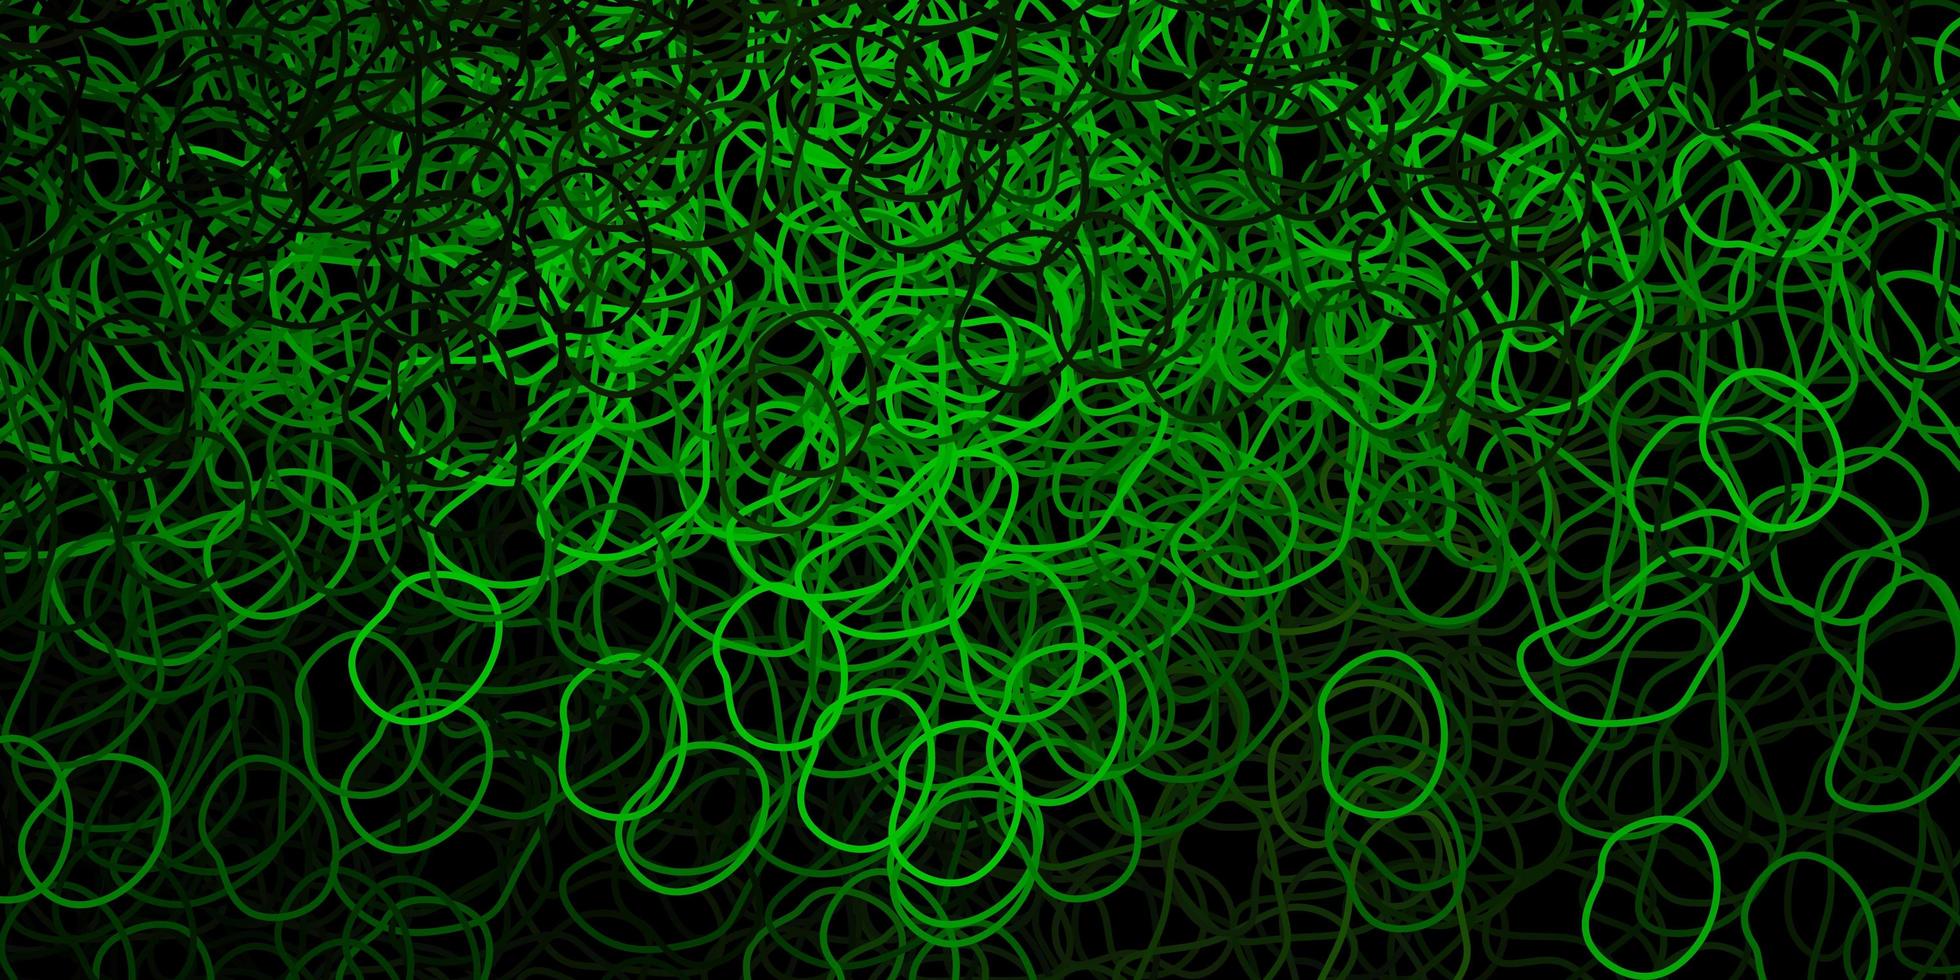 Telón de fondo de vector verde oscuro con formas caóticas.